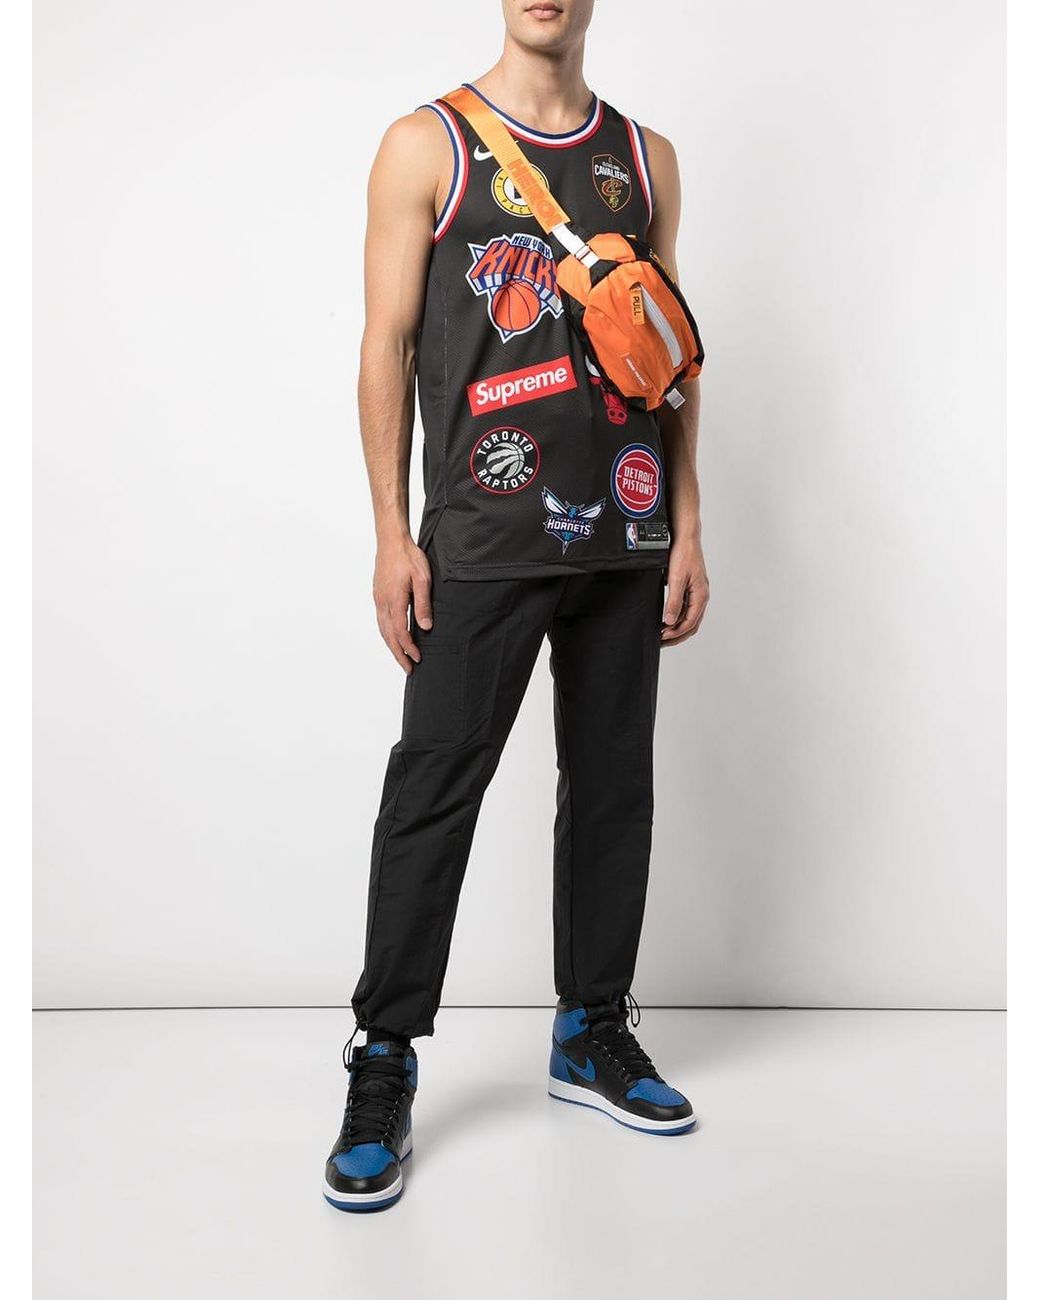 Camiseta de tirantes Nike/NBA Teams Basketball Supreme de hombre de color Negro Lyst